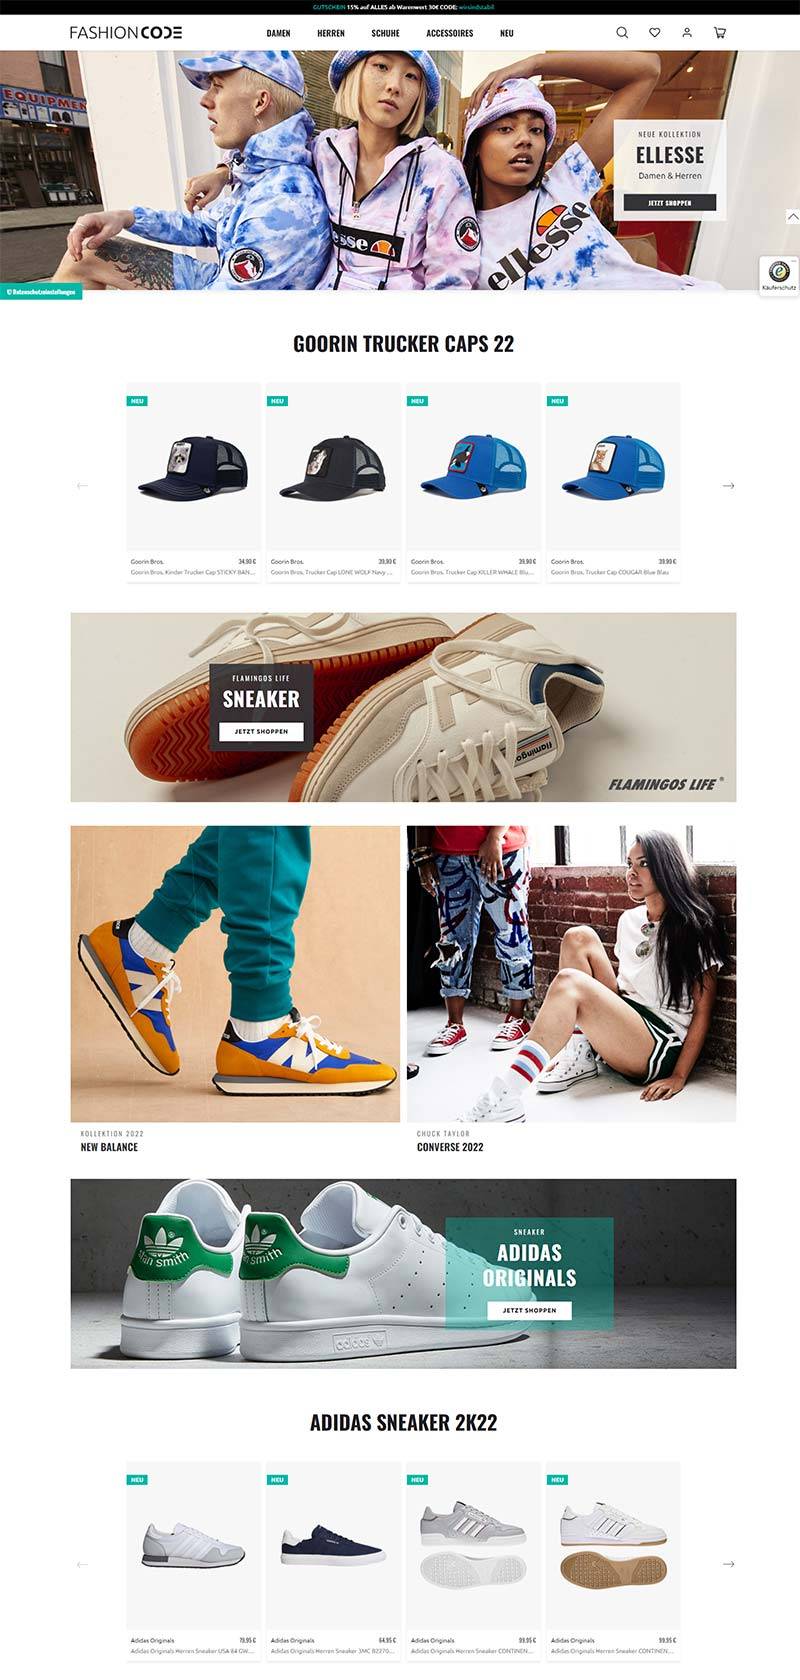 FashionCode 德国运动鞋服品牌购物网站